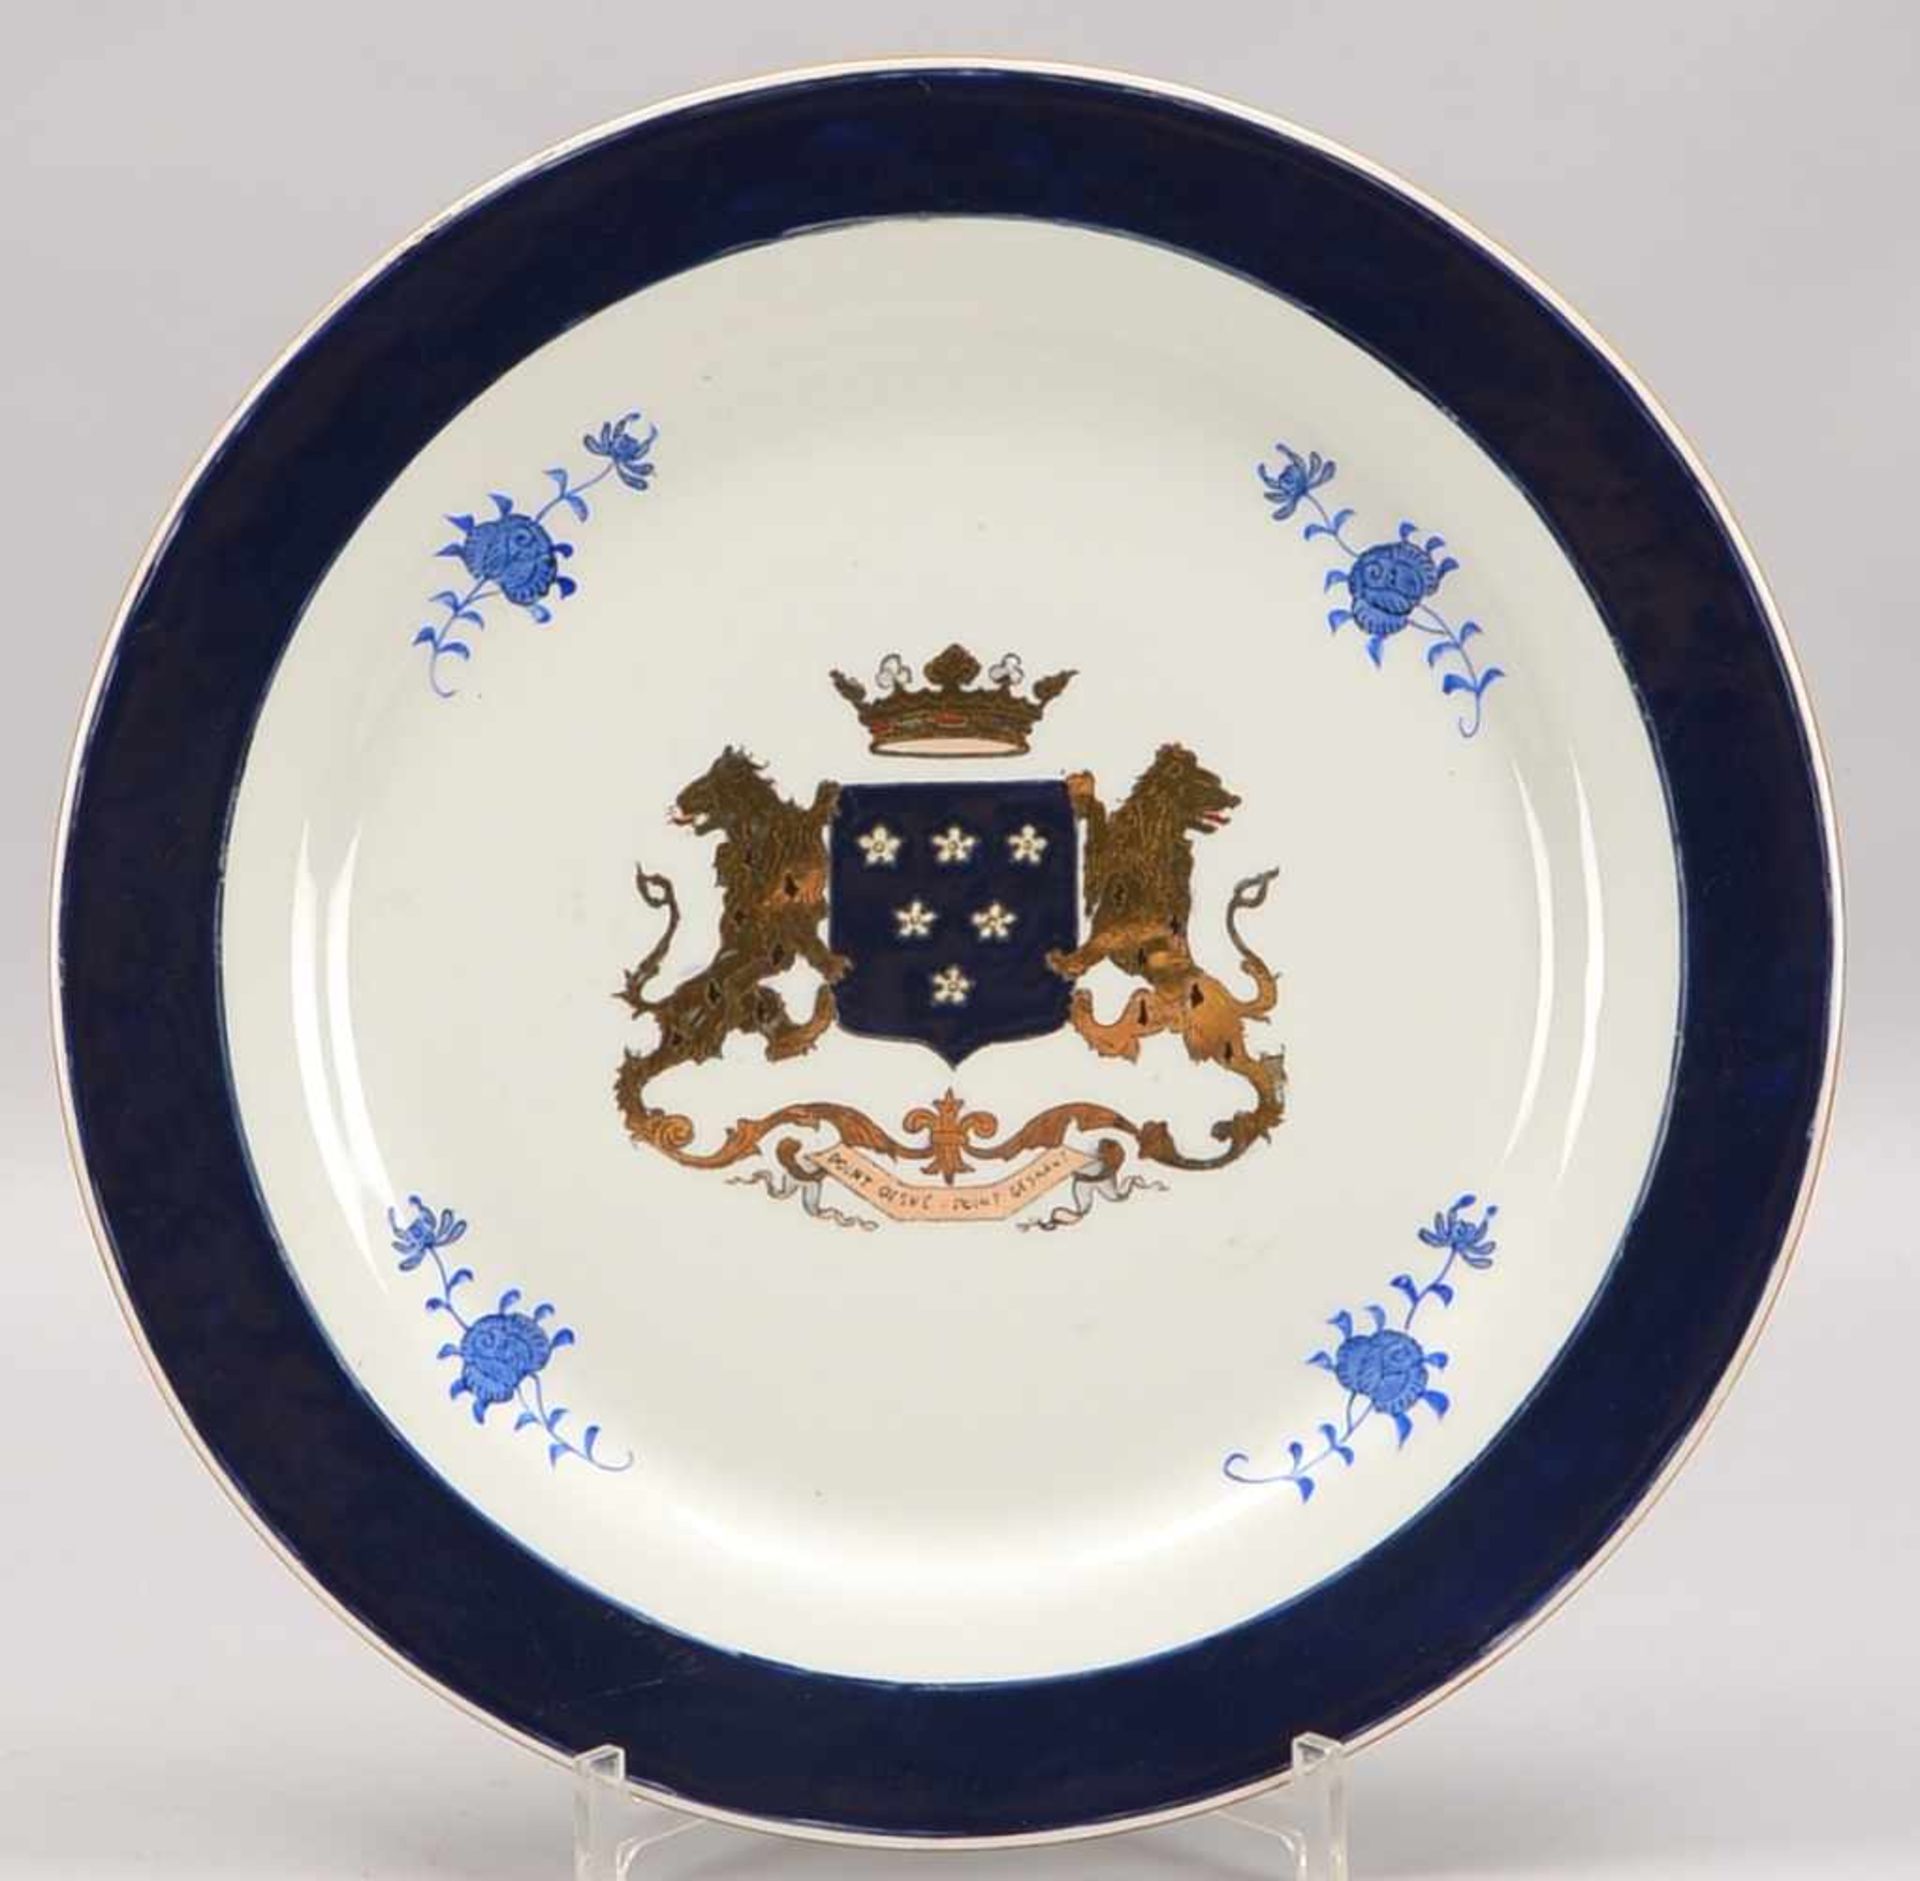 Schale/Kumme, Porzellan, kobaltblaue Bemalung und Vergoldung, mit Wappendekor; Durchmesser Ø 30,5